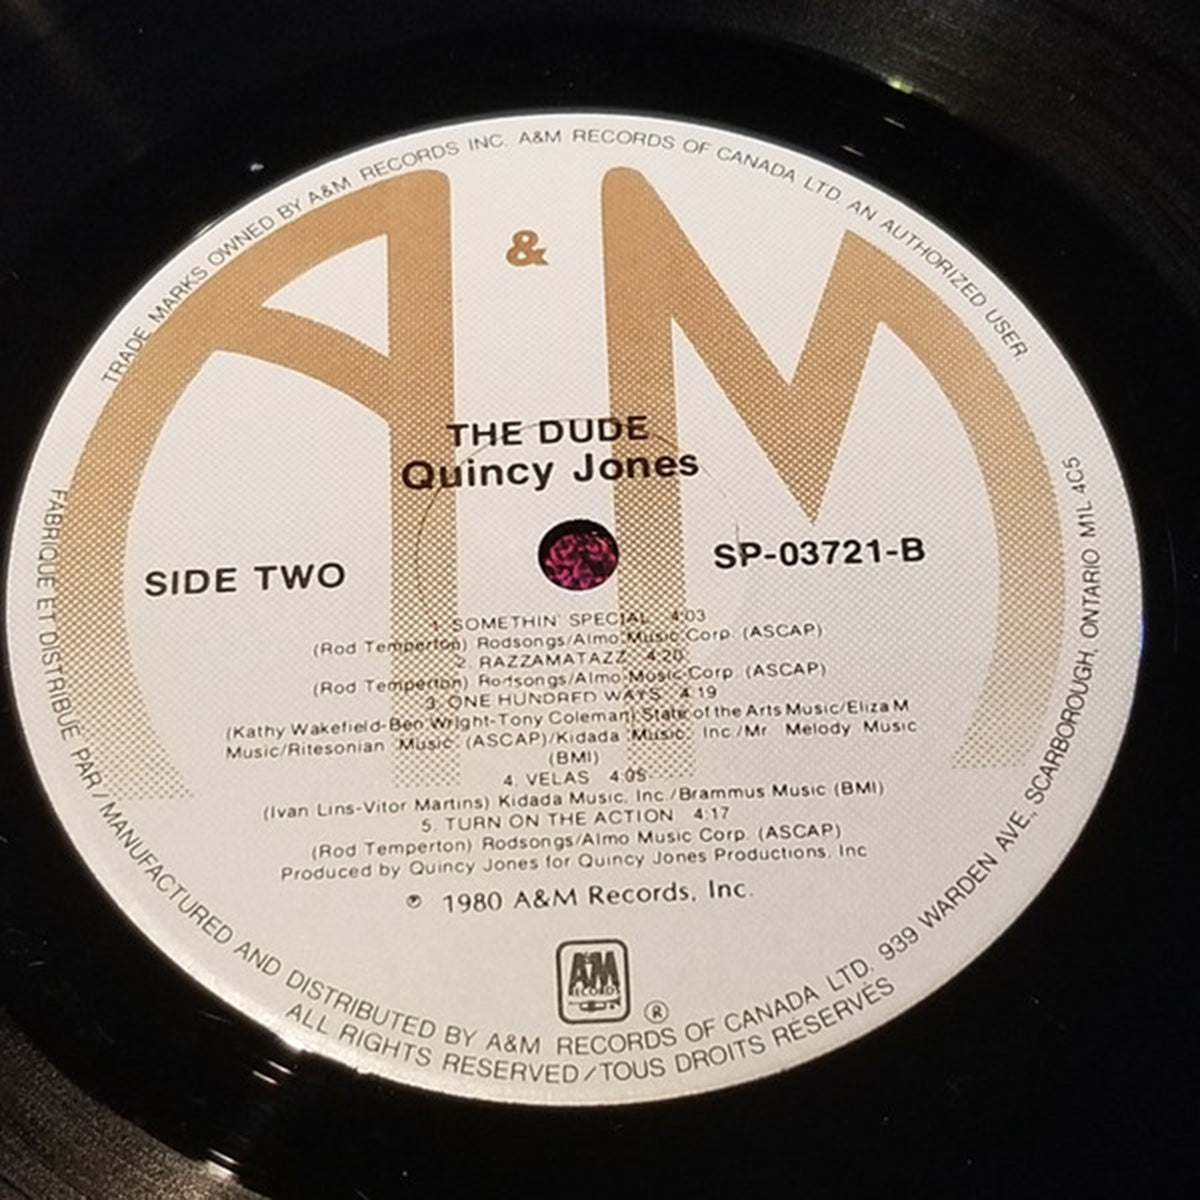 Quincy Jones – The Dude - 1981